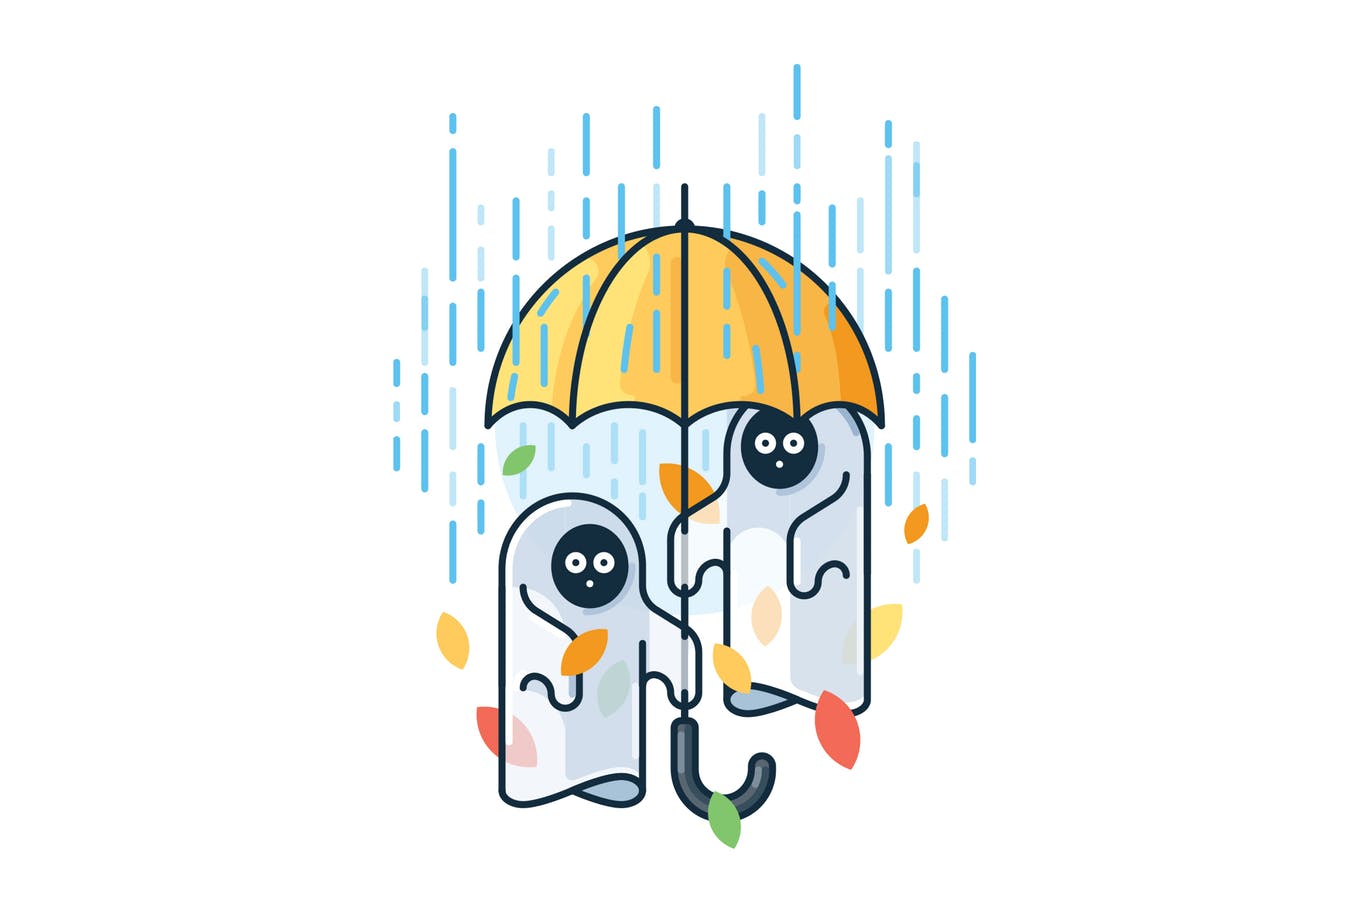 雨中的鬼魂简约线条第一素材精选手绘插画矢量素材 Ghosts in the rain插图